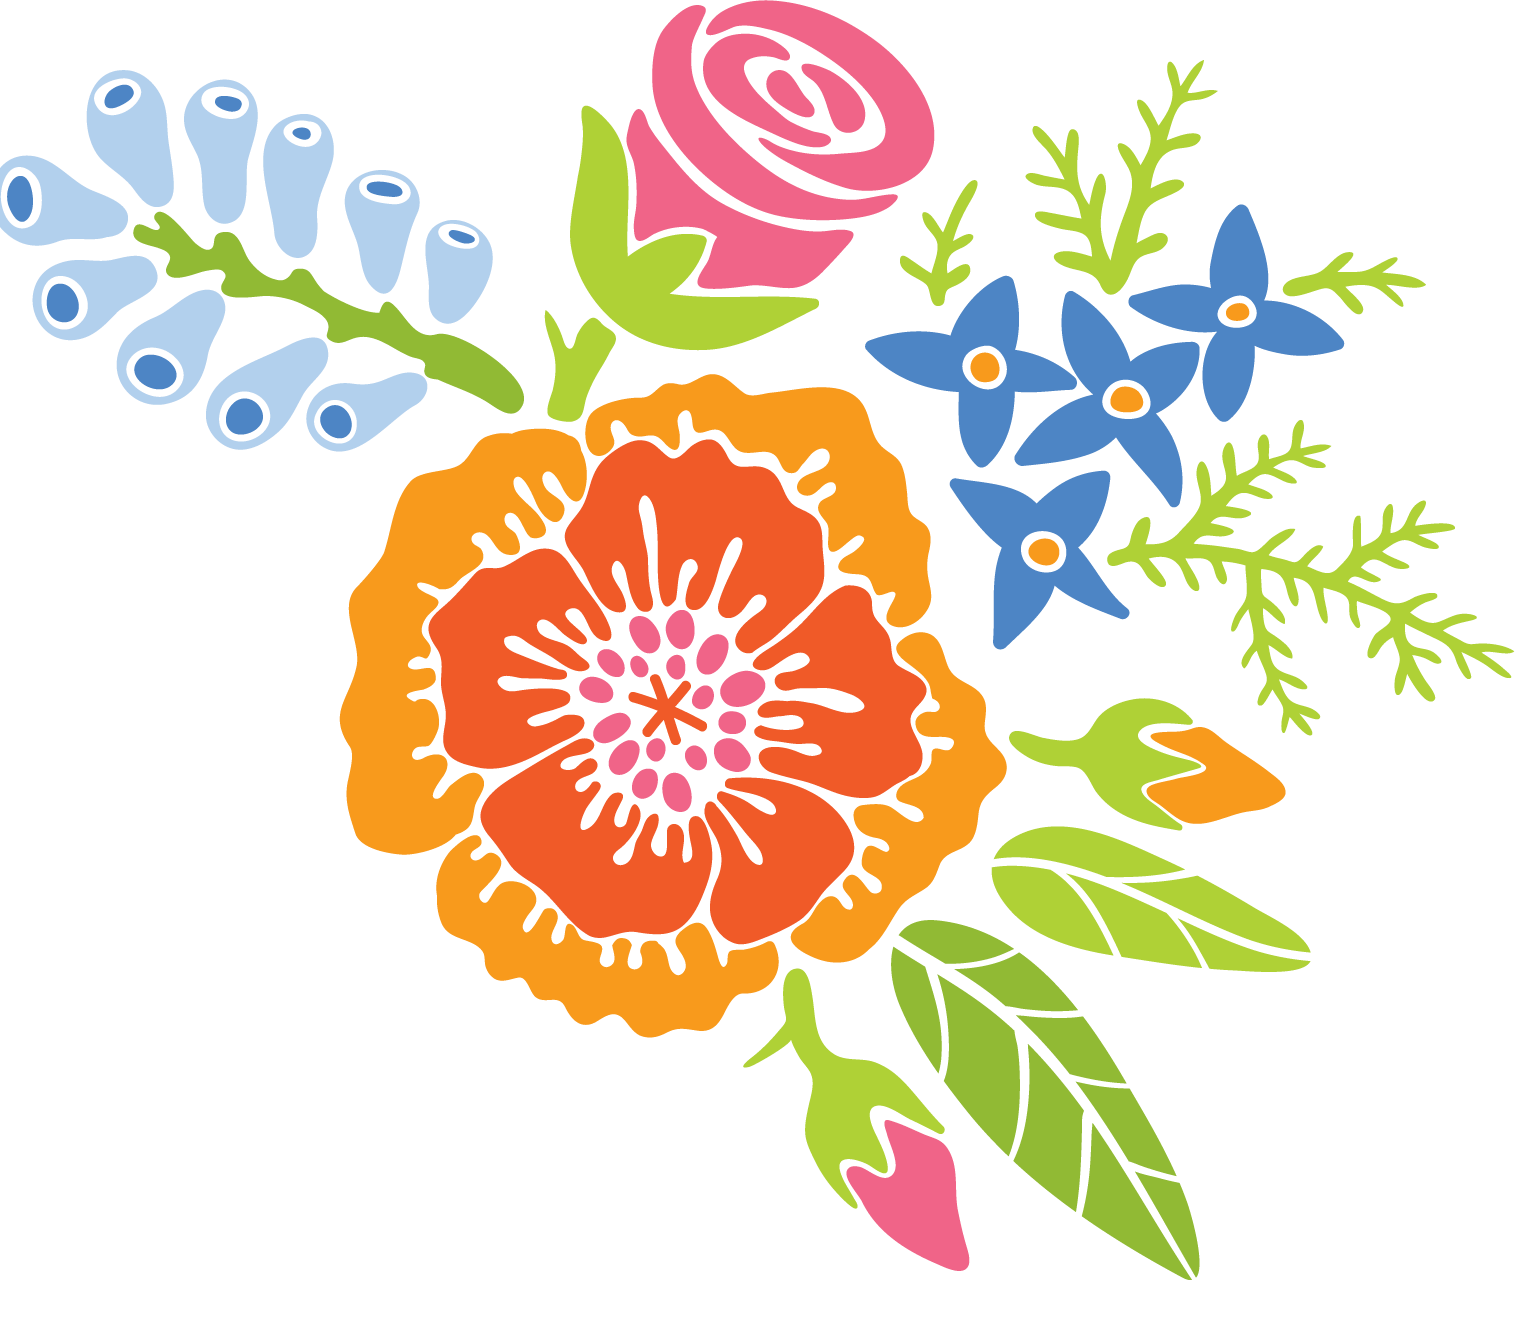 Floral design illustration